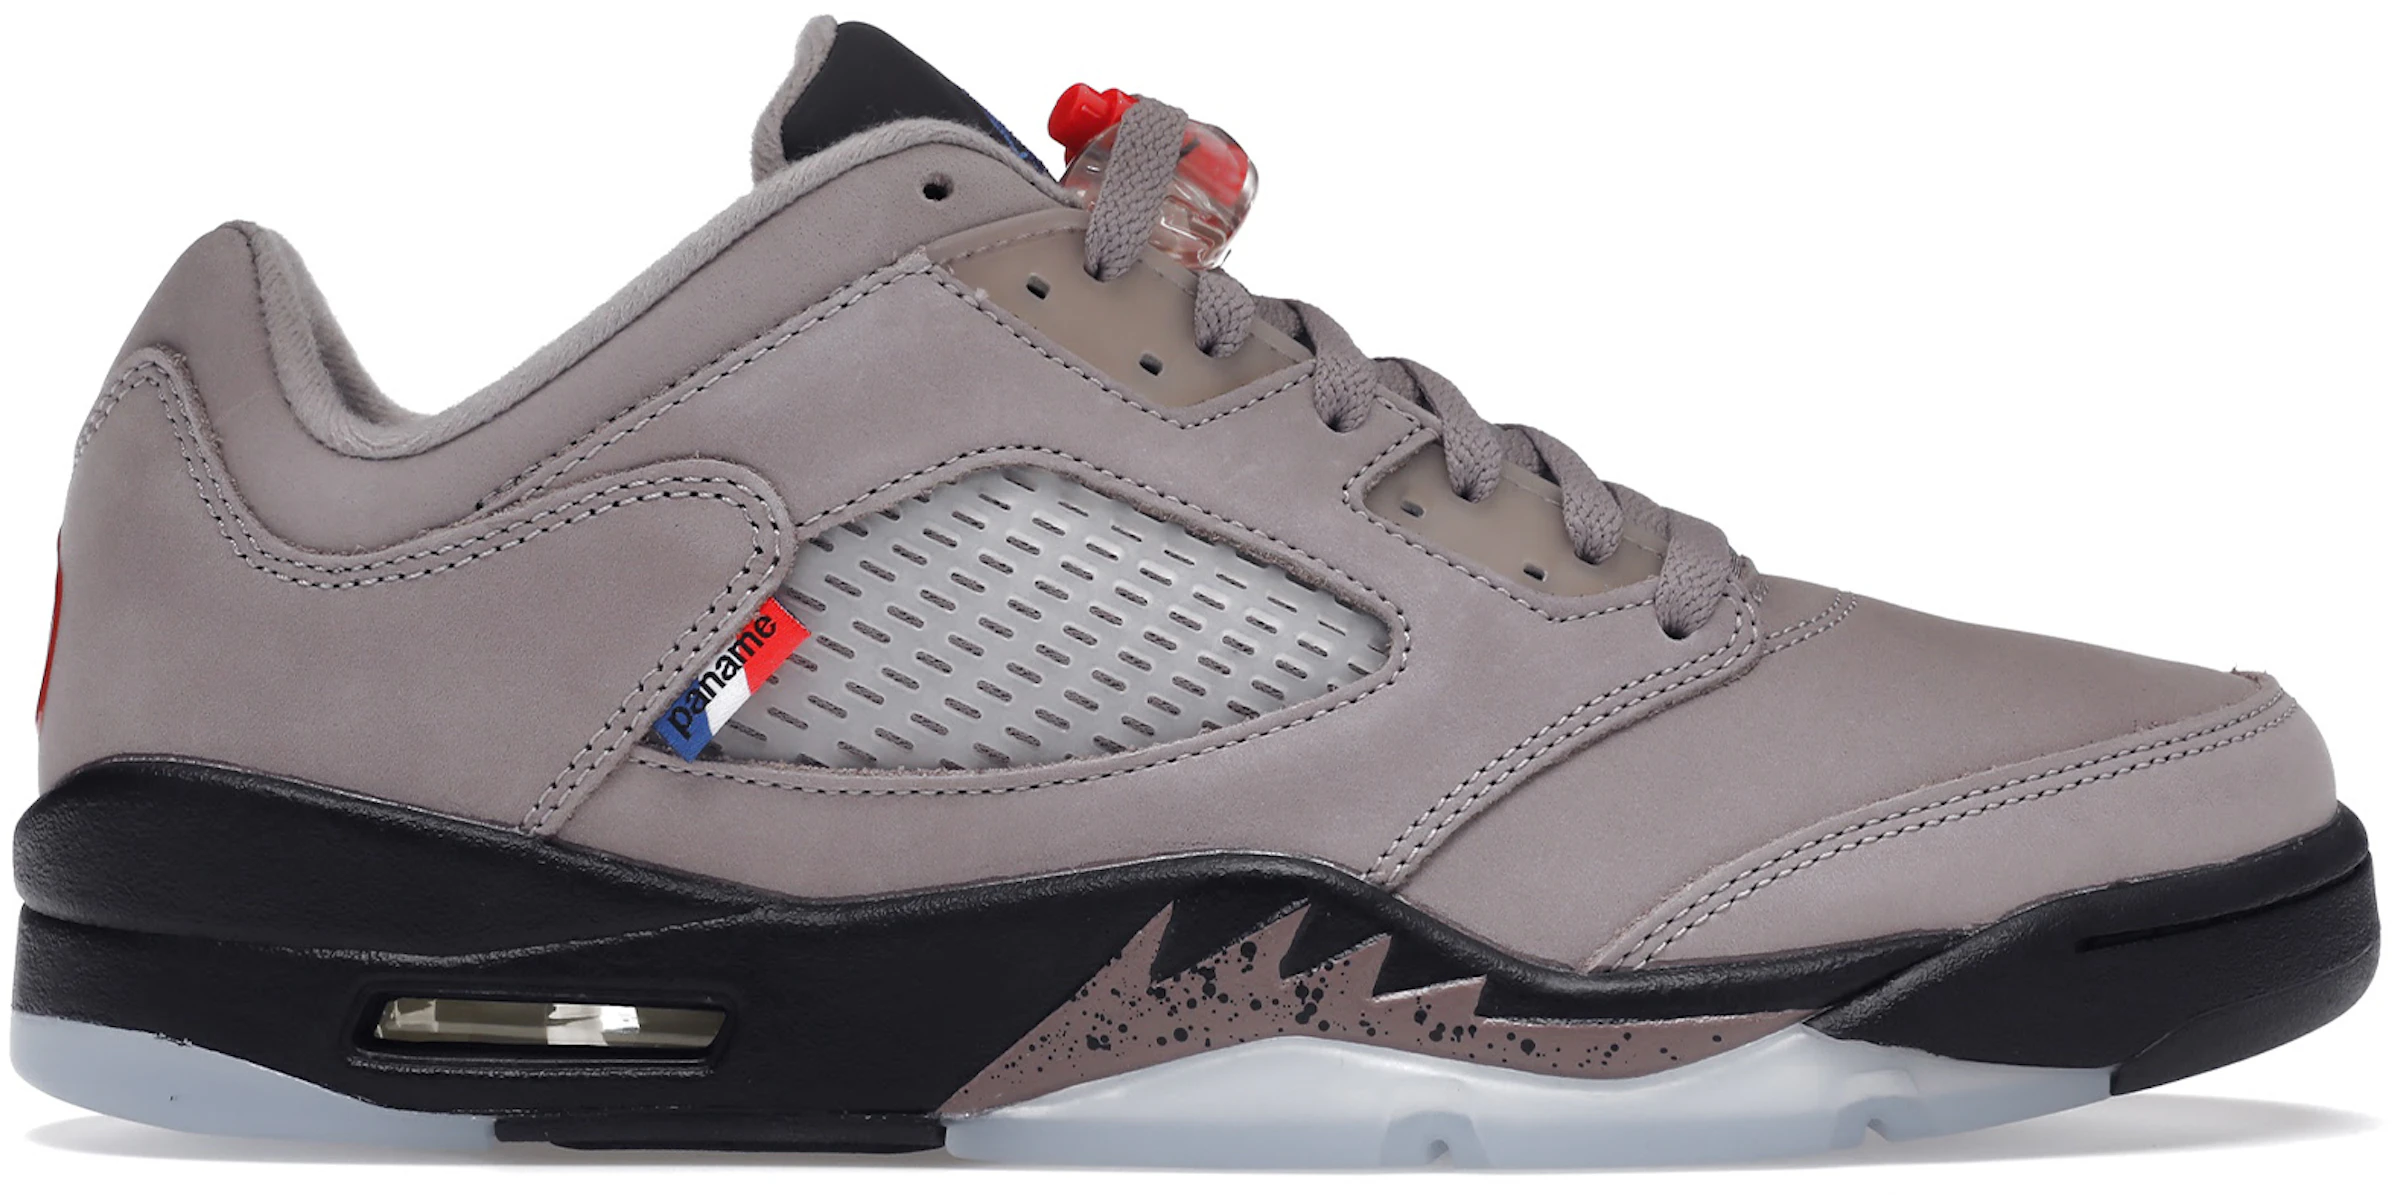 Compra Air Jordan 5 Calzado sneakers nuevos StockX